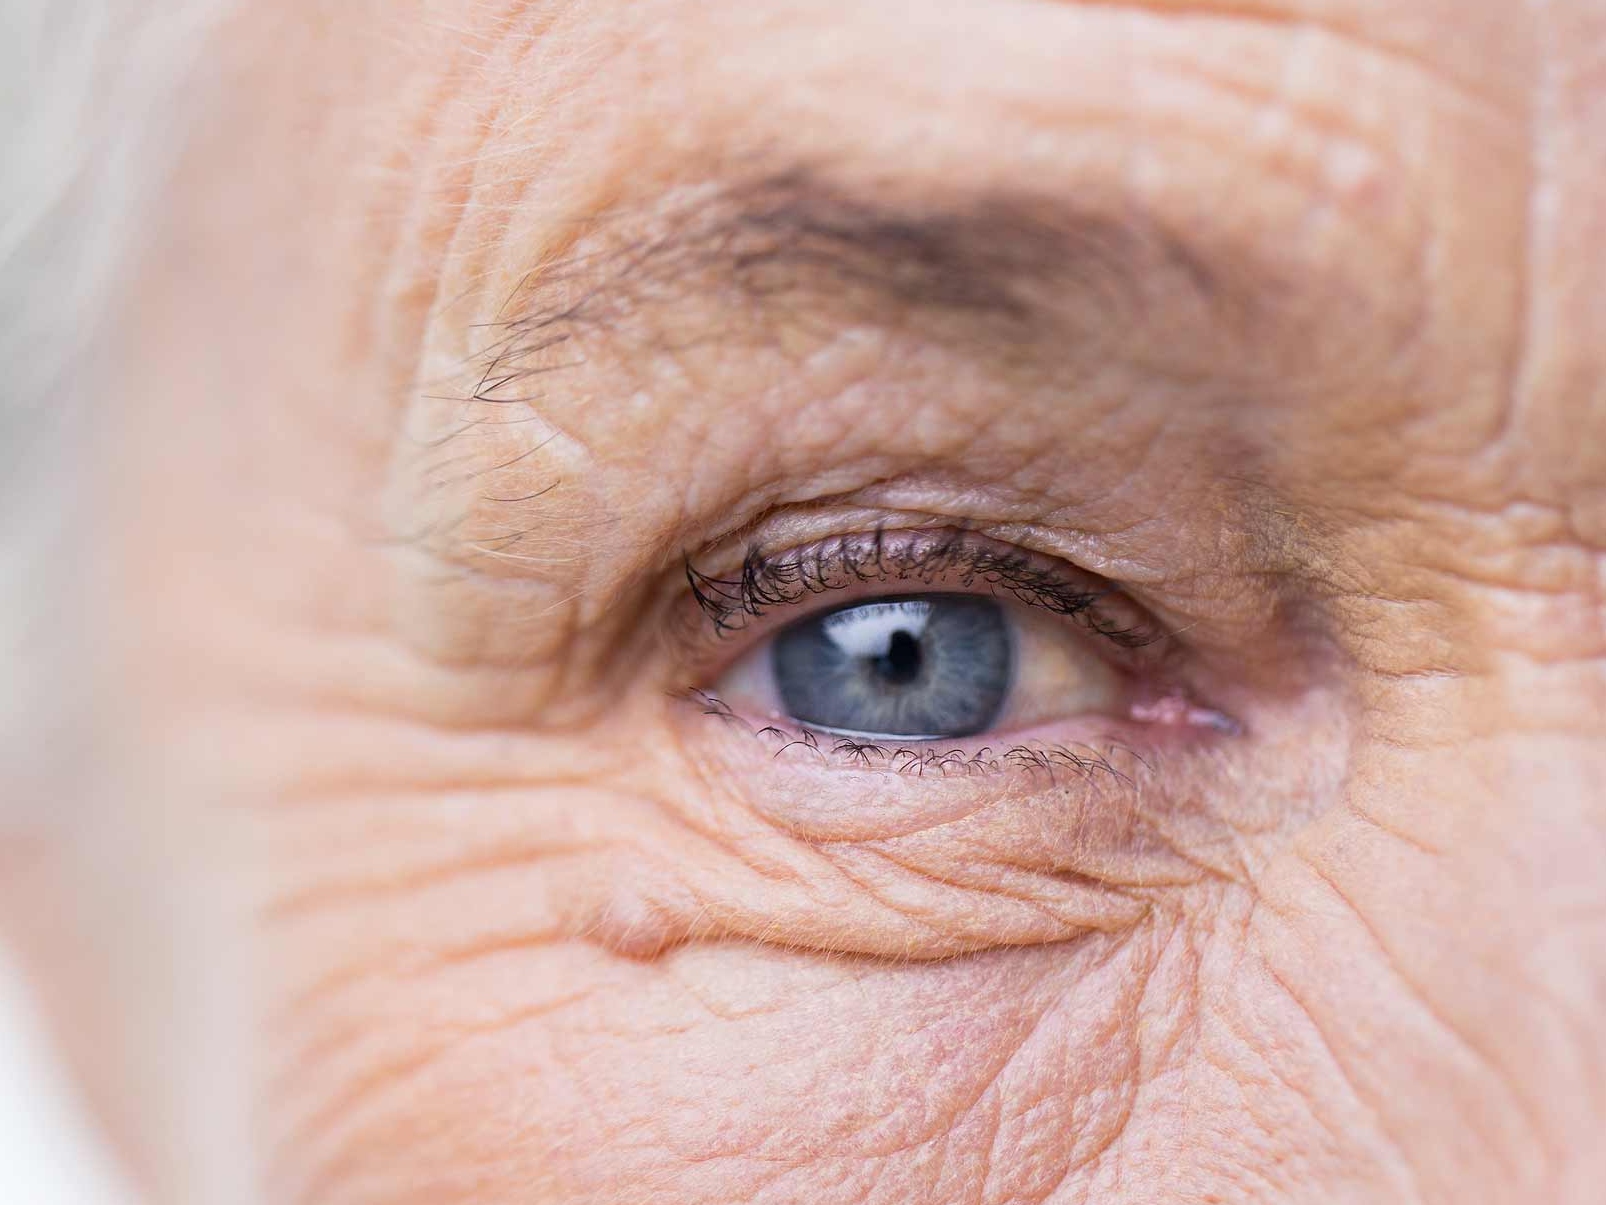 Bilden visar en närbild av ett ohälsosamt öga som illustrerar potentiella okulära kopplade risker. 